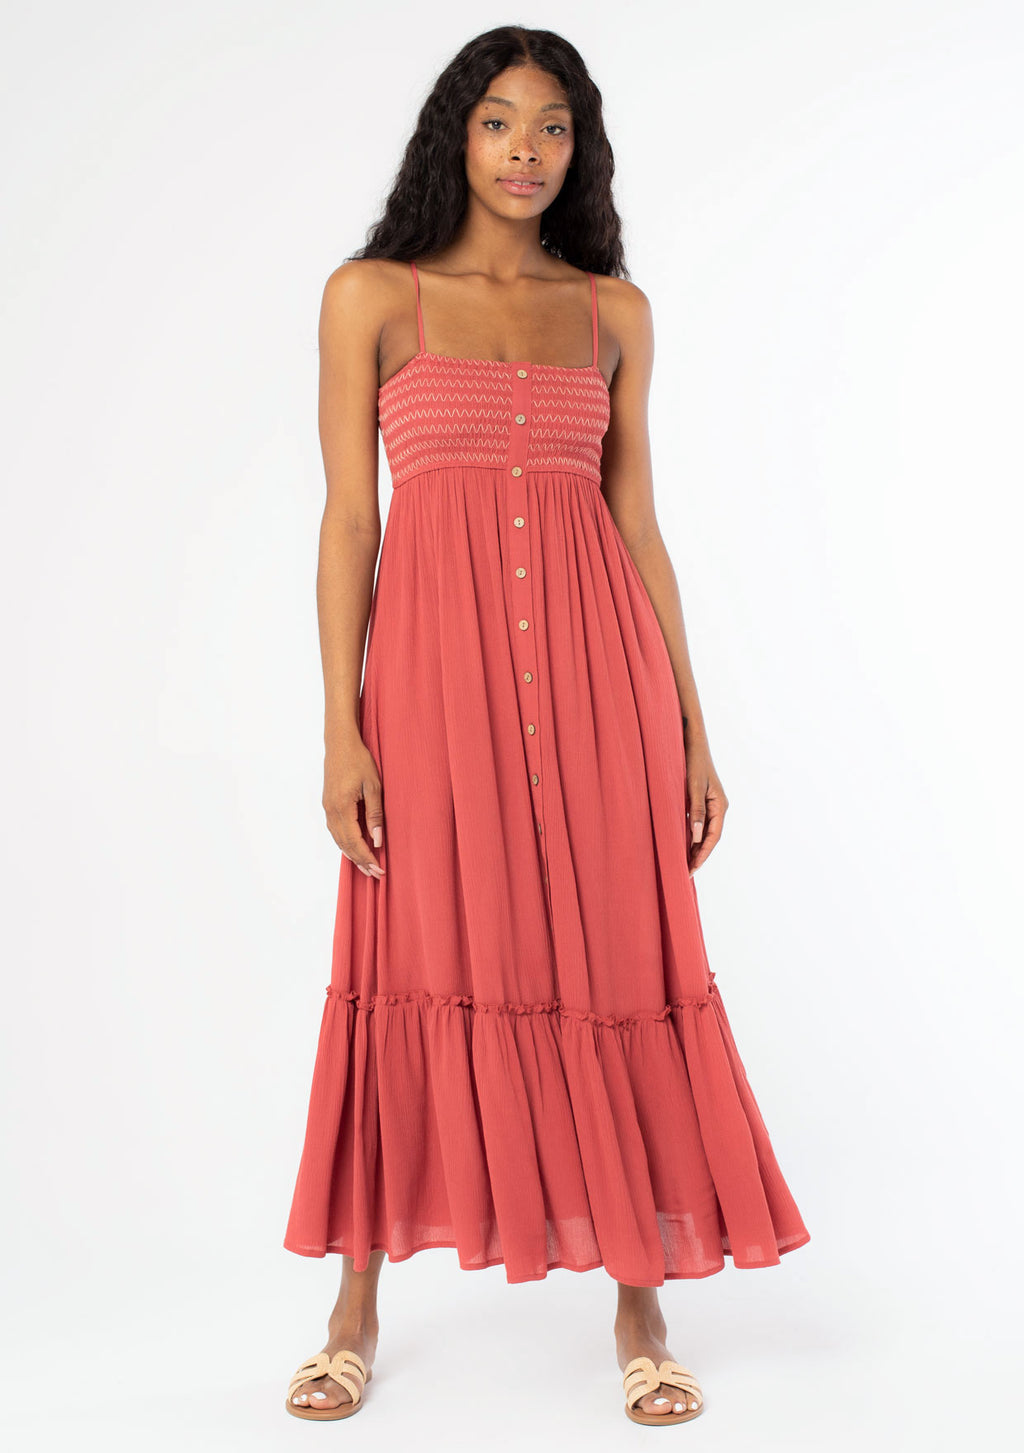 Women's Flowy Smocked Maxi Dress - Beach Style Dress | LOVESTITCH